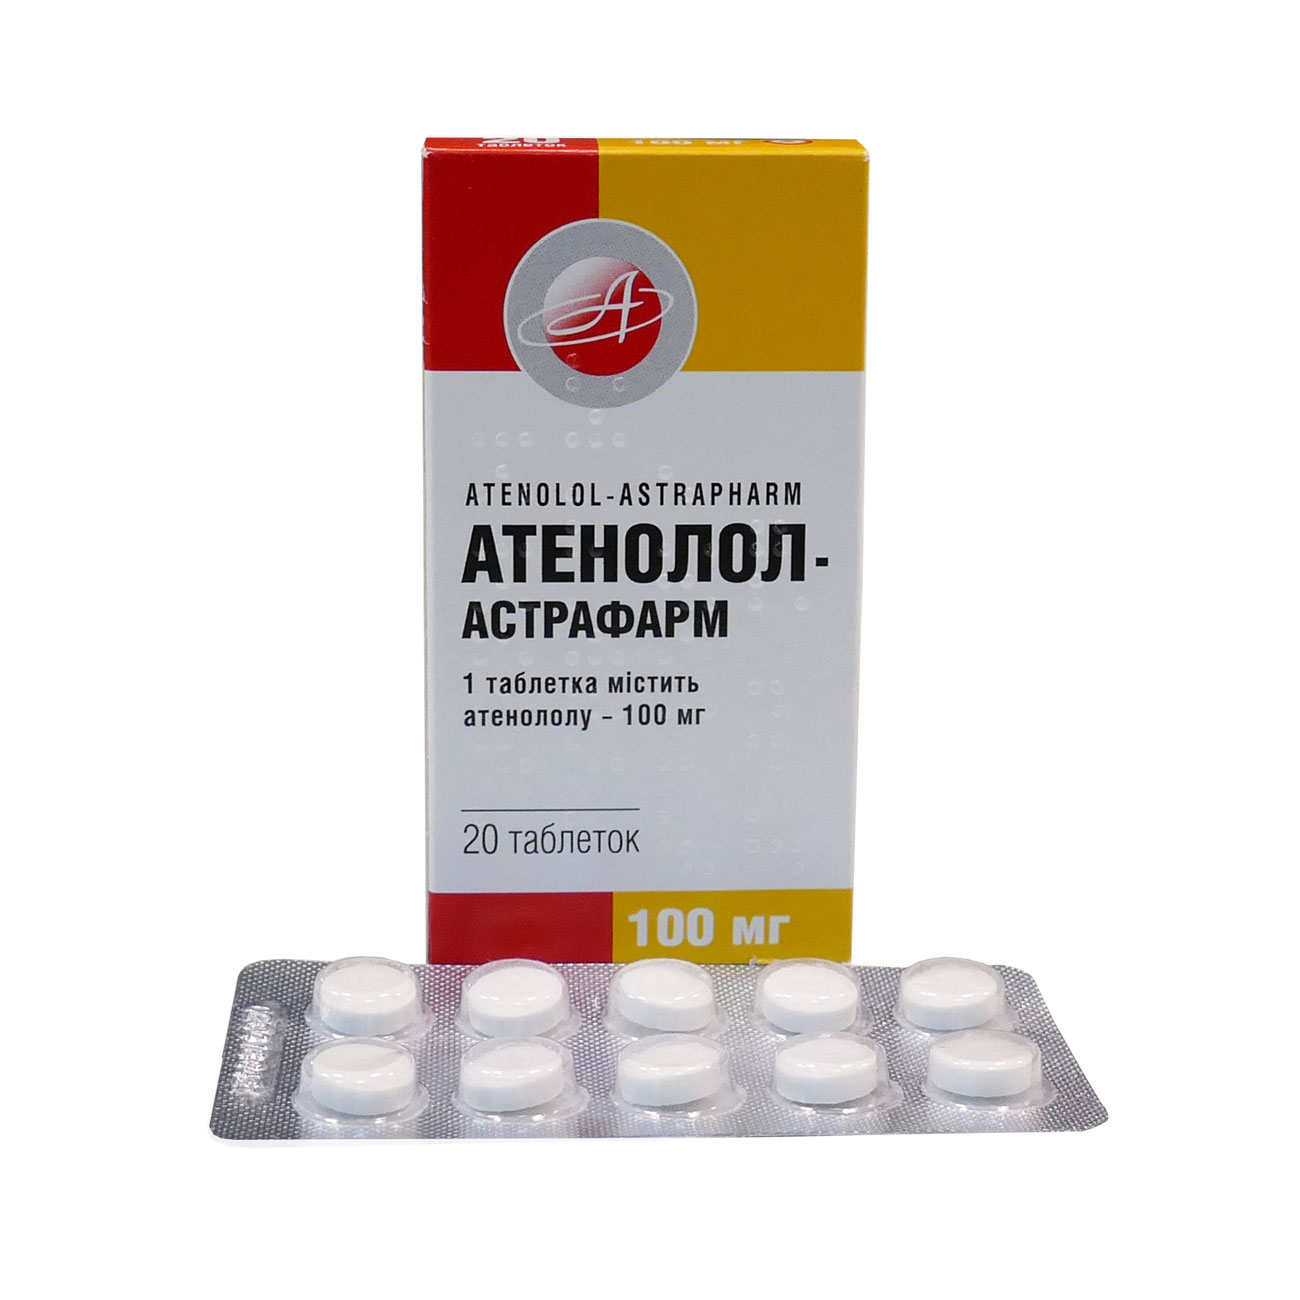 Атенолол (никомед): инструкция, цена, рецепт и аналоги препарата